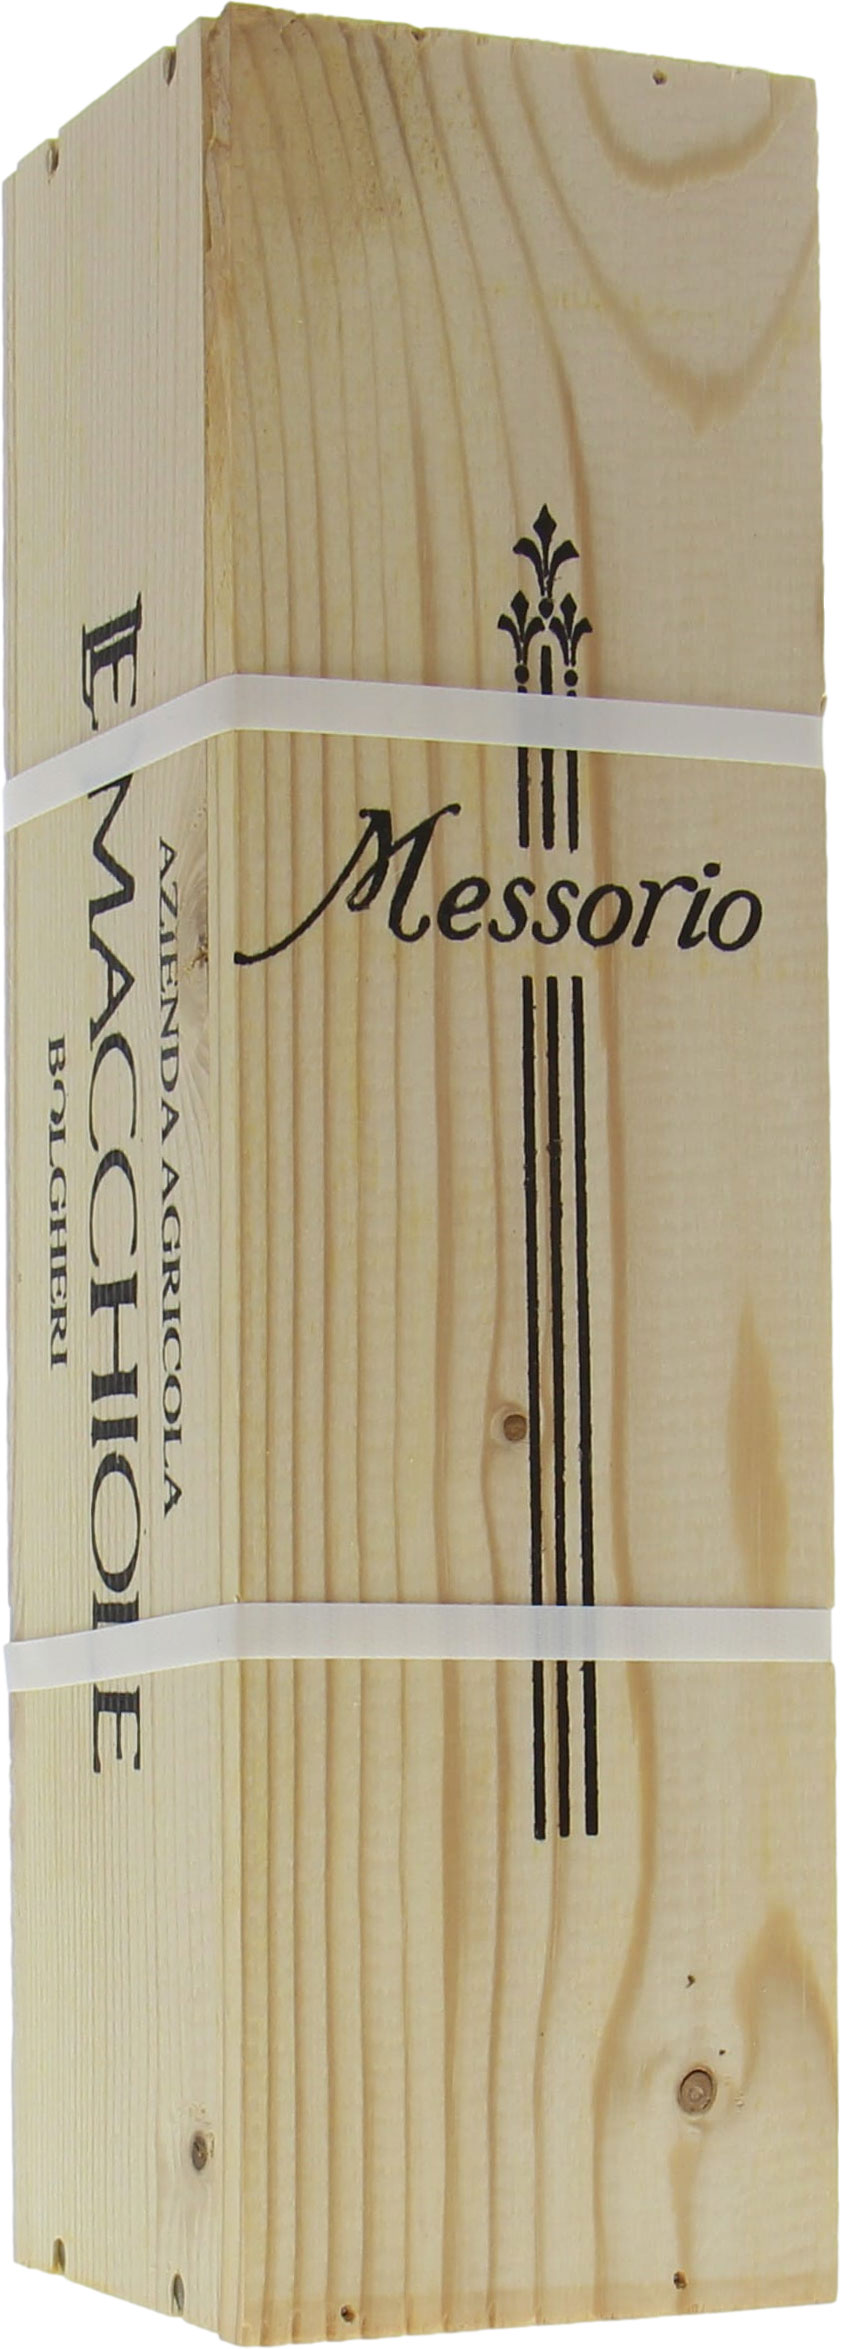 Le Macchiole - Messorio 2000 In single OWC